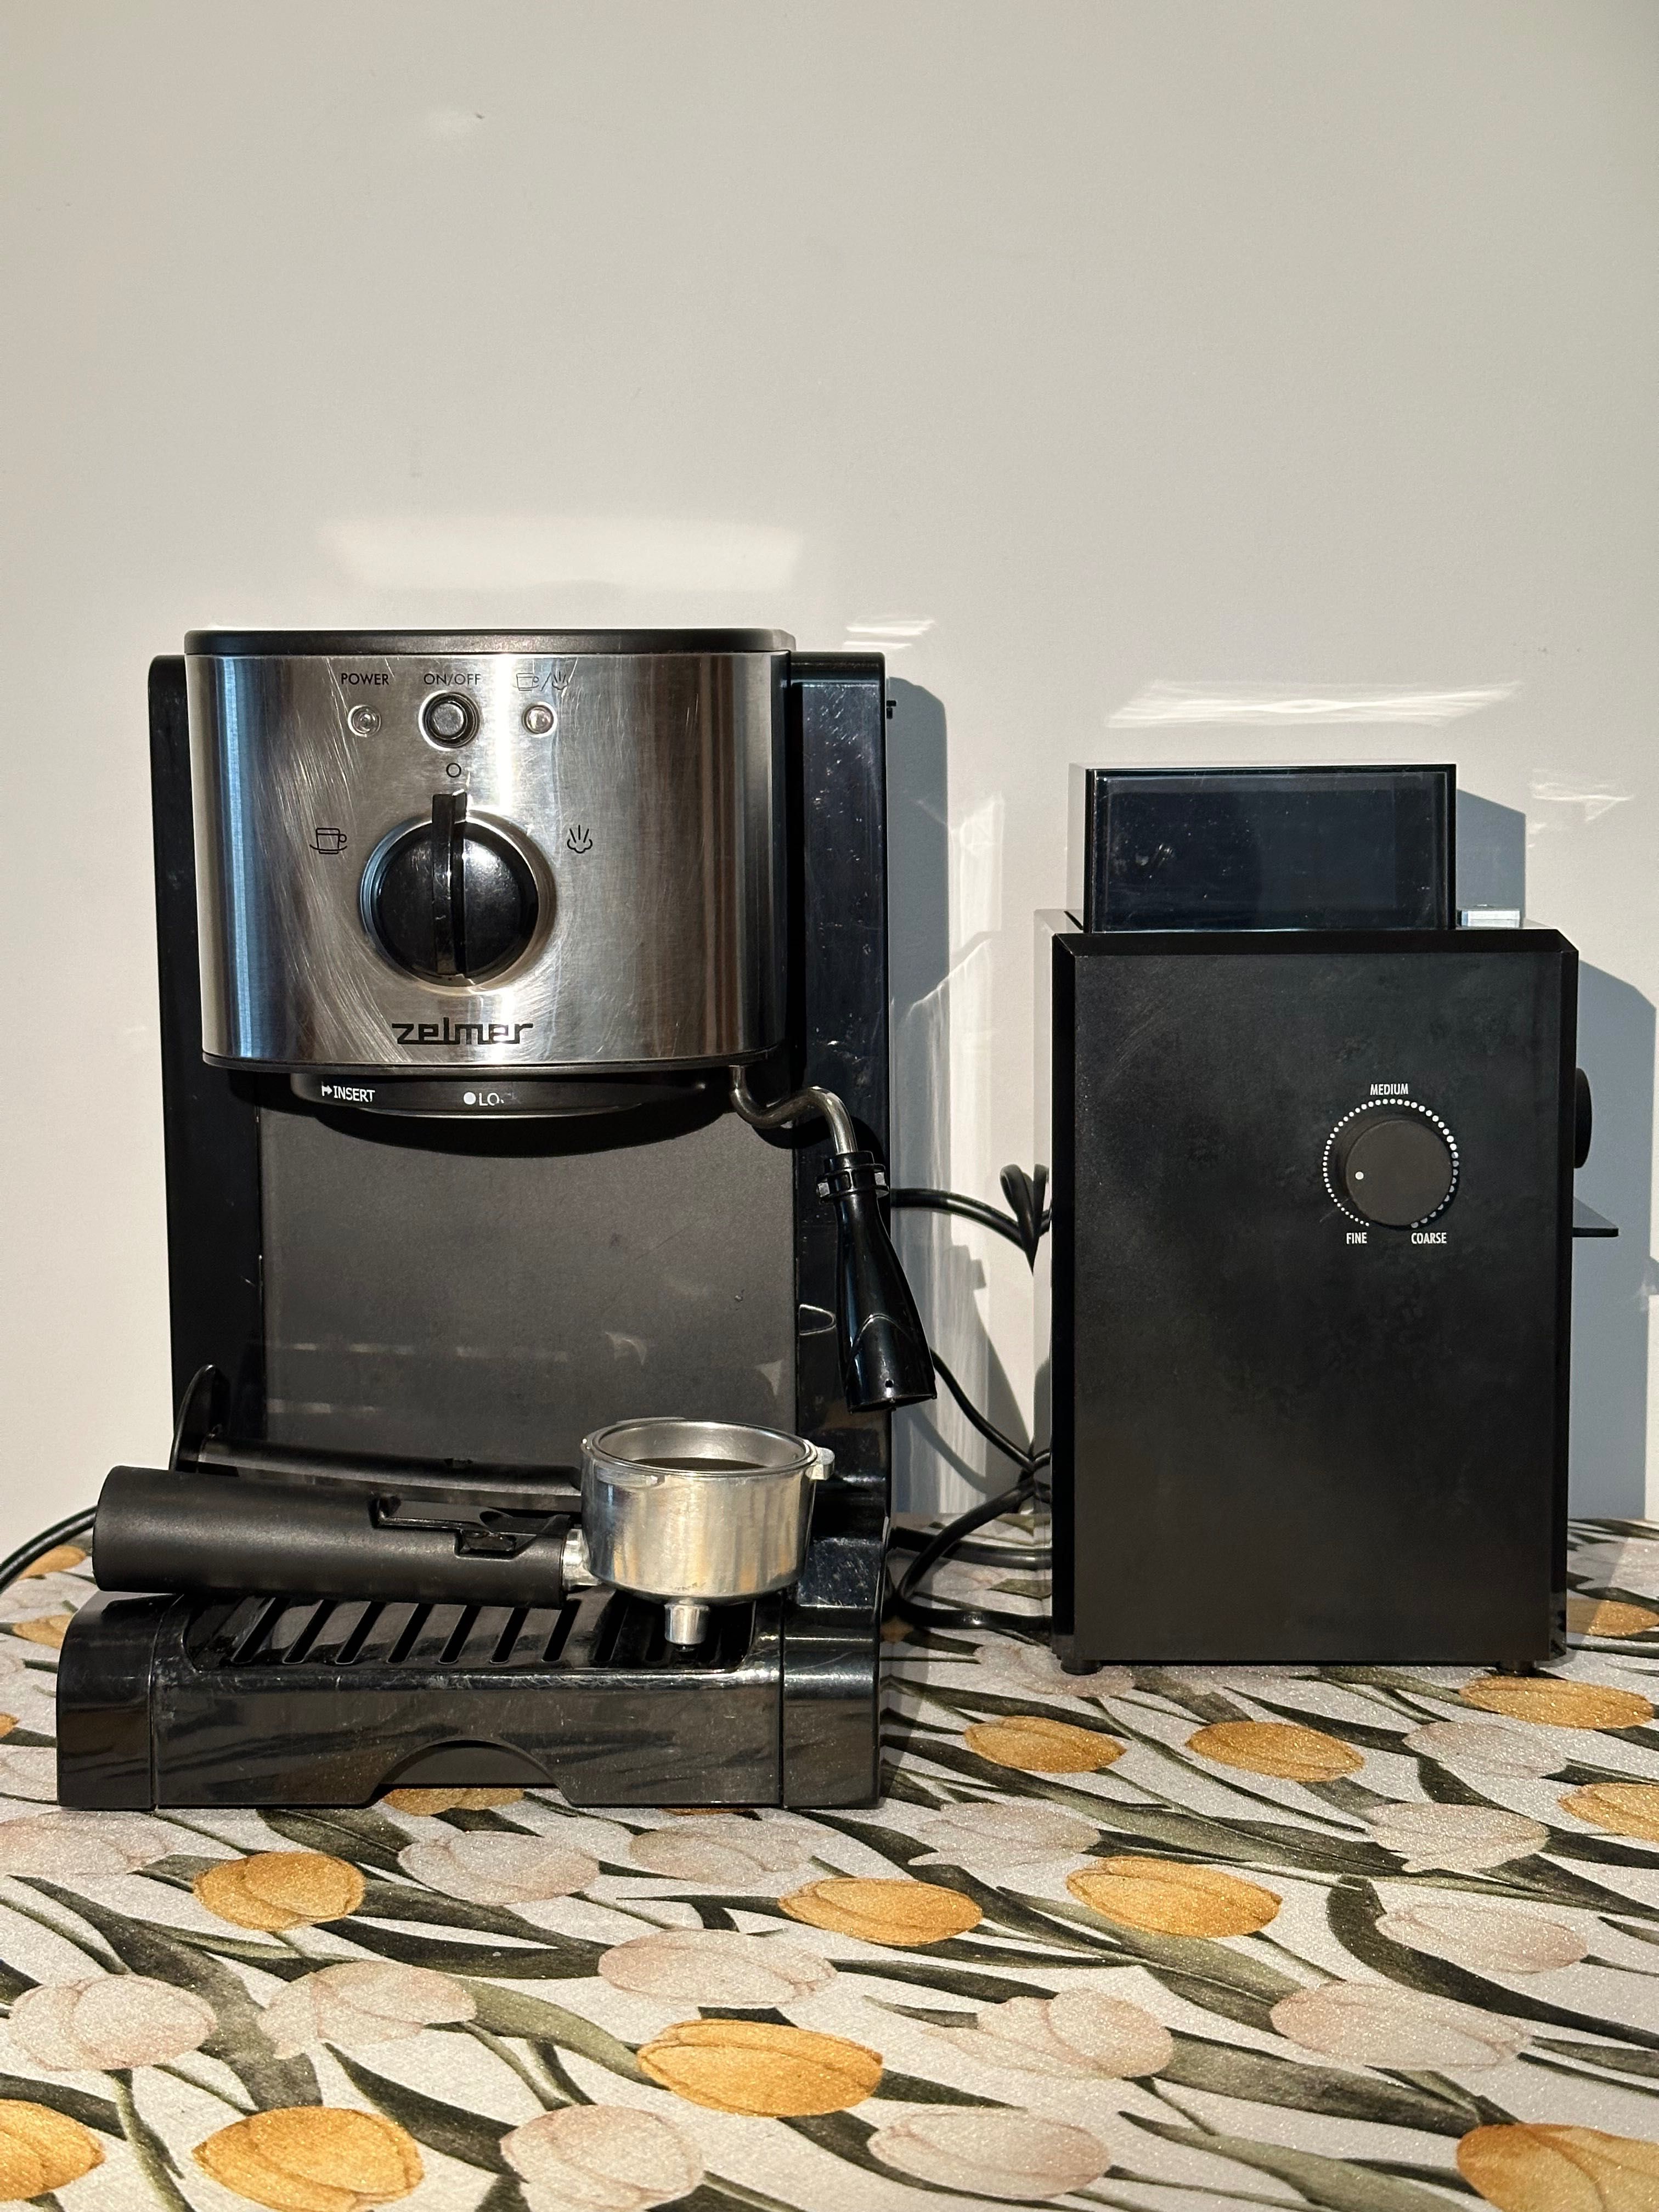 Ekspres kolbowy Zelmer + młynek elektryczny do kawy DeLonghi